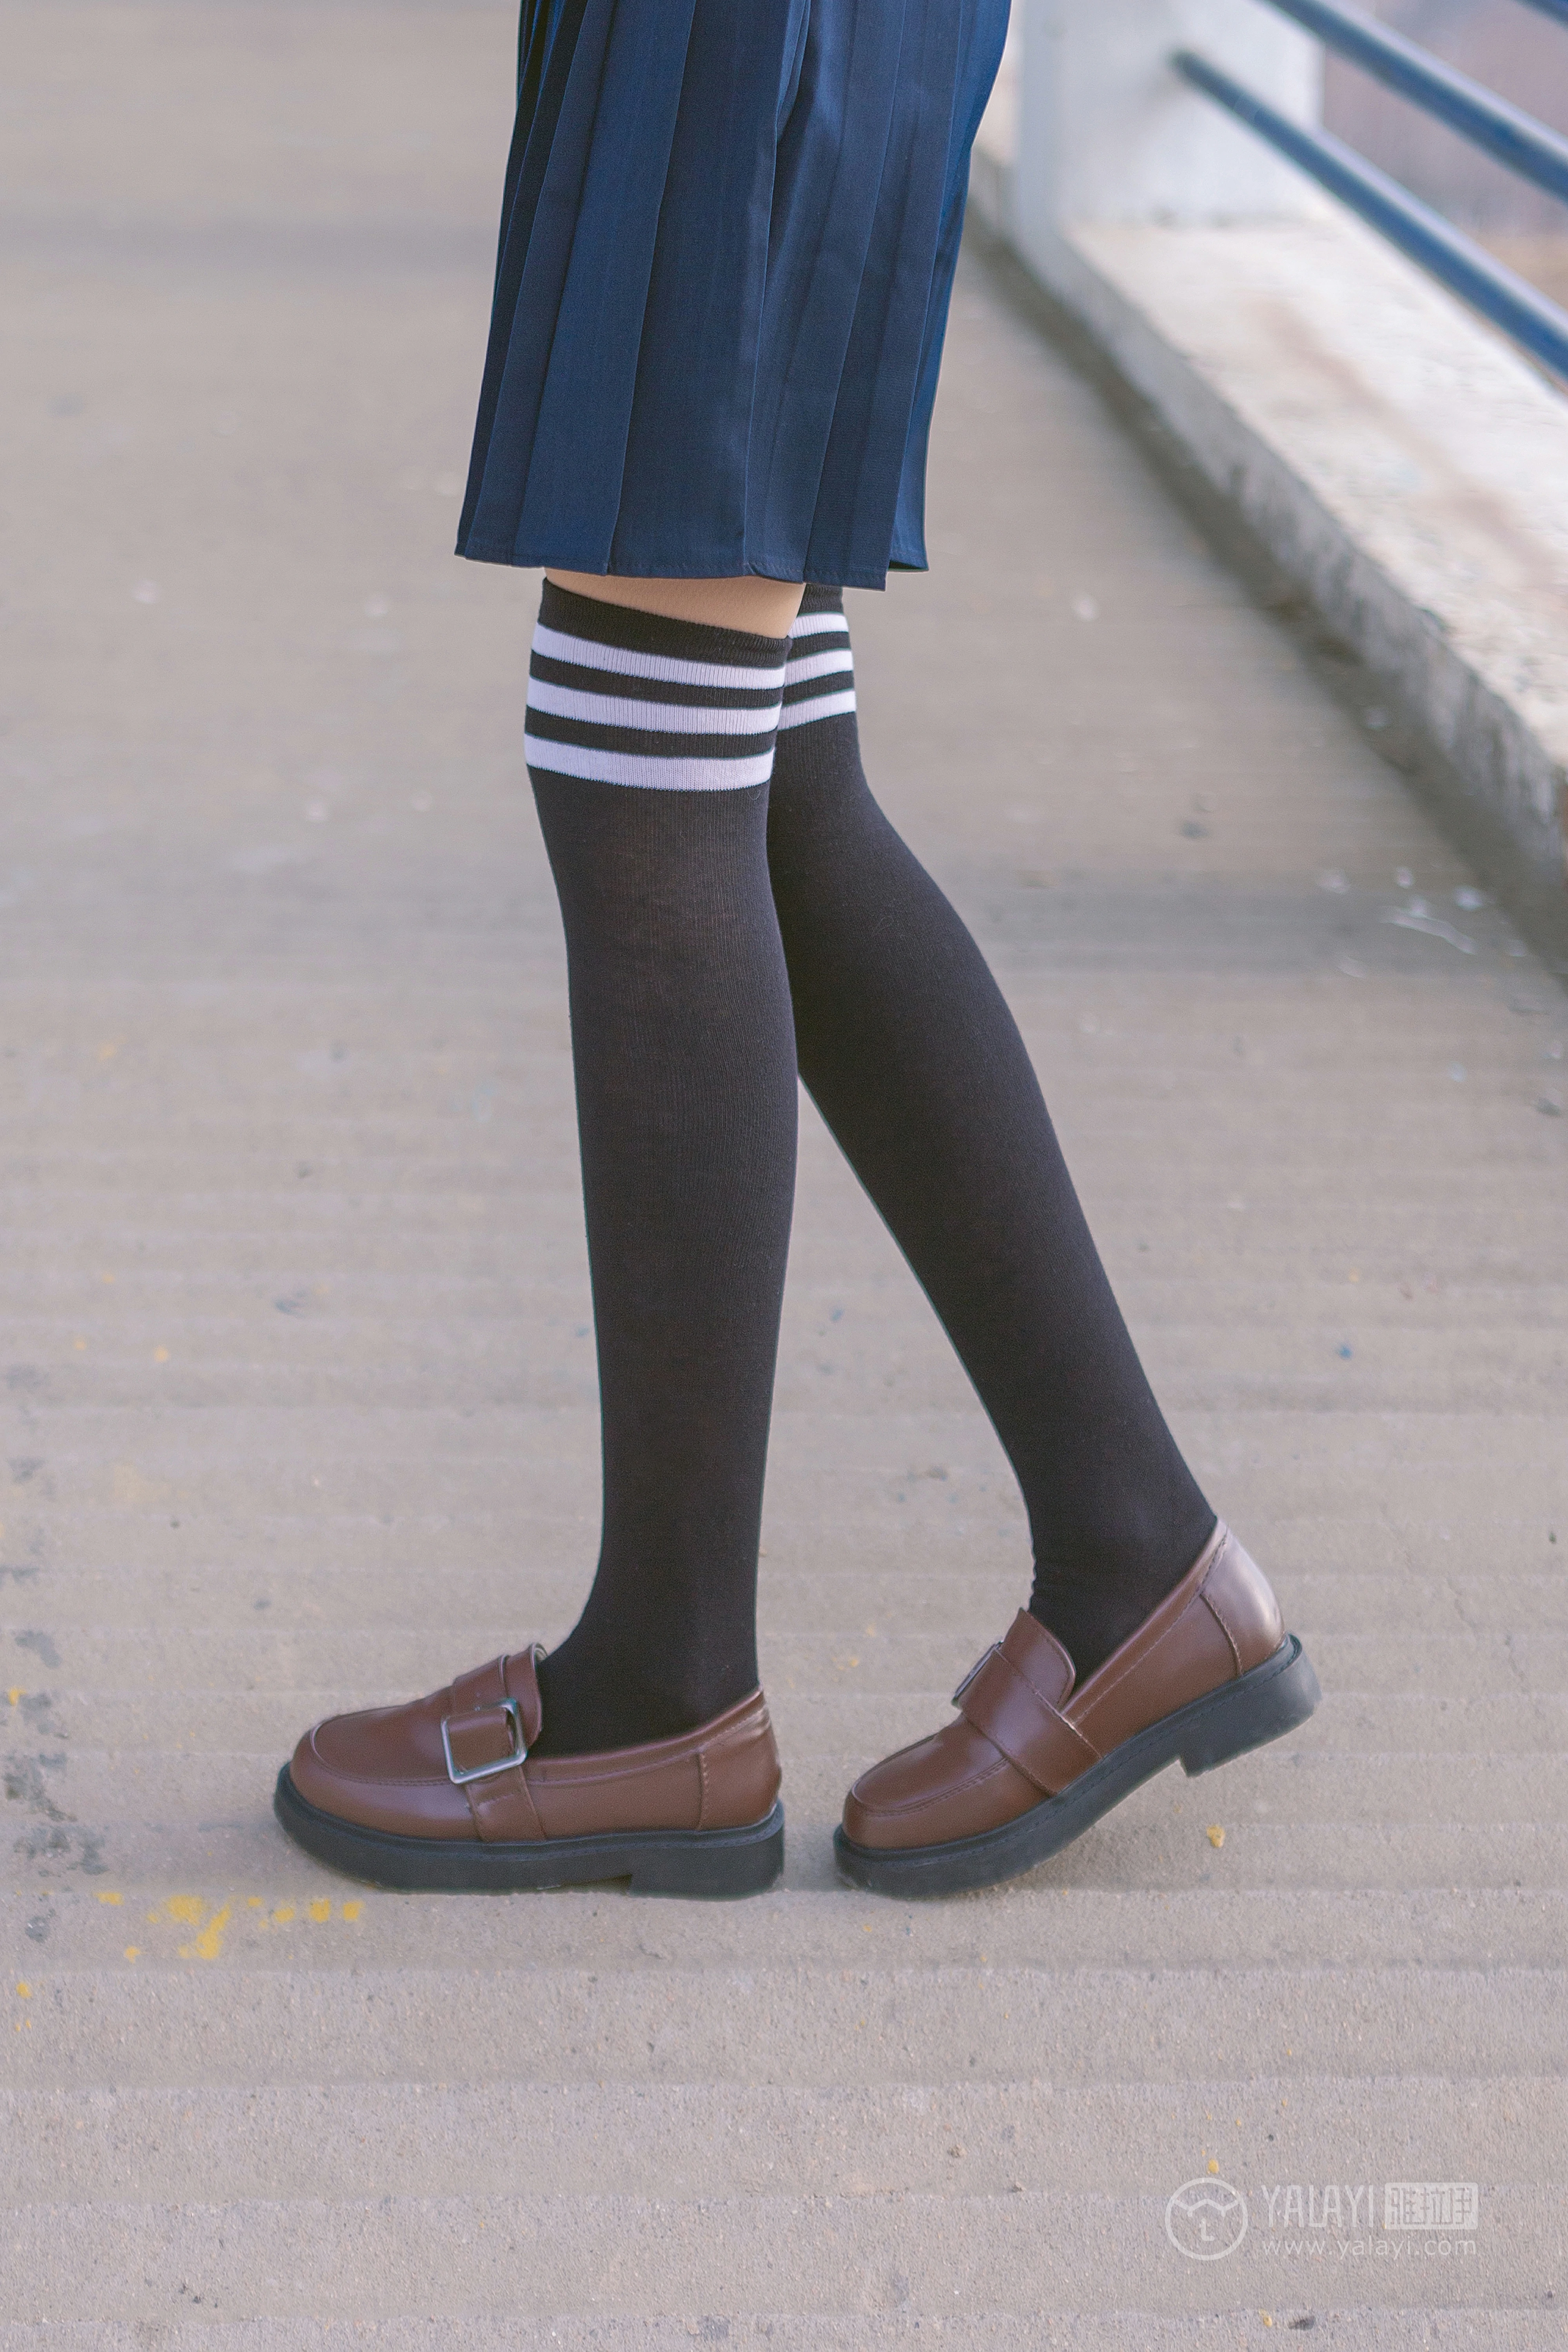 [YALAYI雅拉伊]No.229 小清新 文慧慧 日本高中女生制服与短裙加黑色丝袜美腿性感私房写真集,